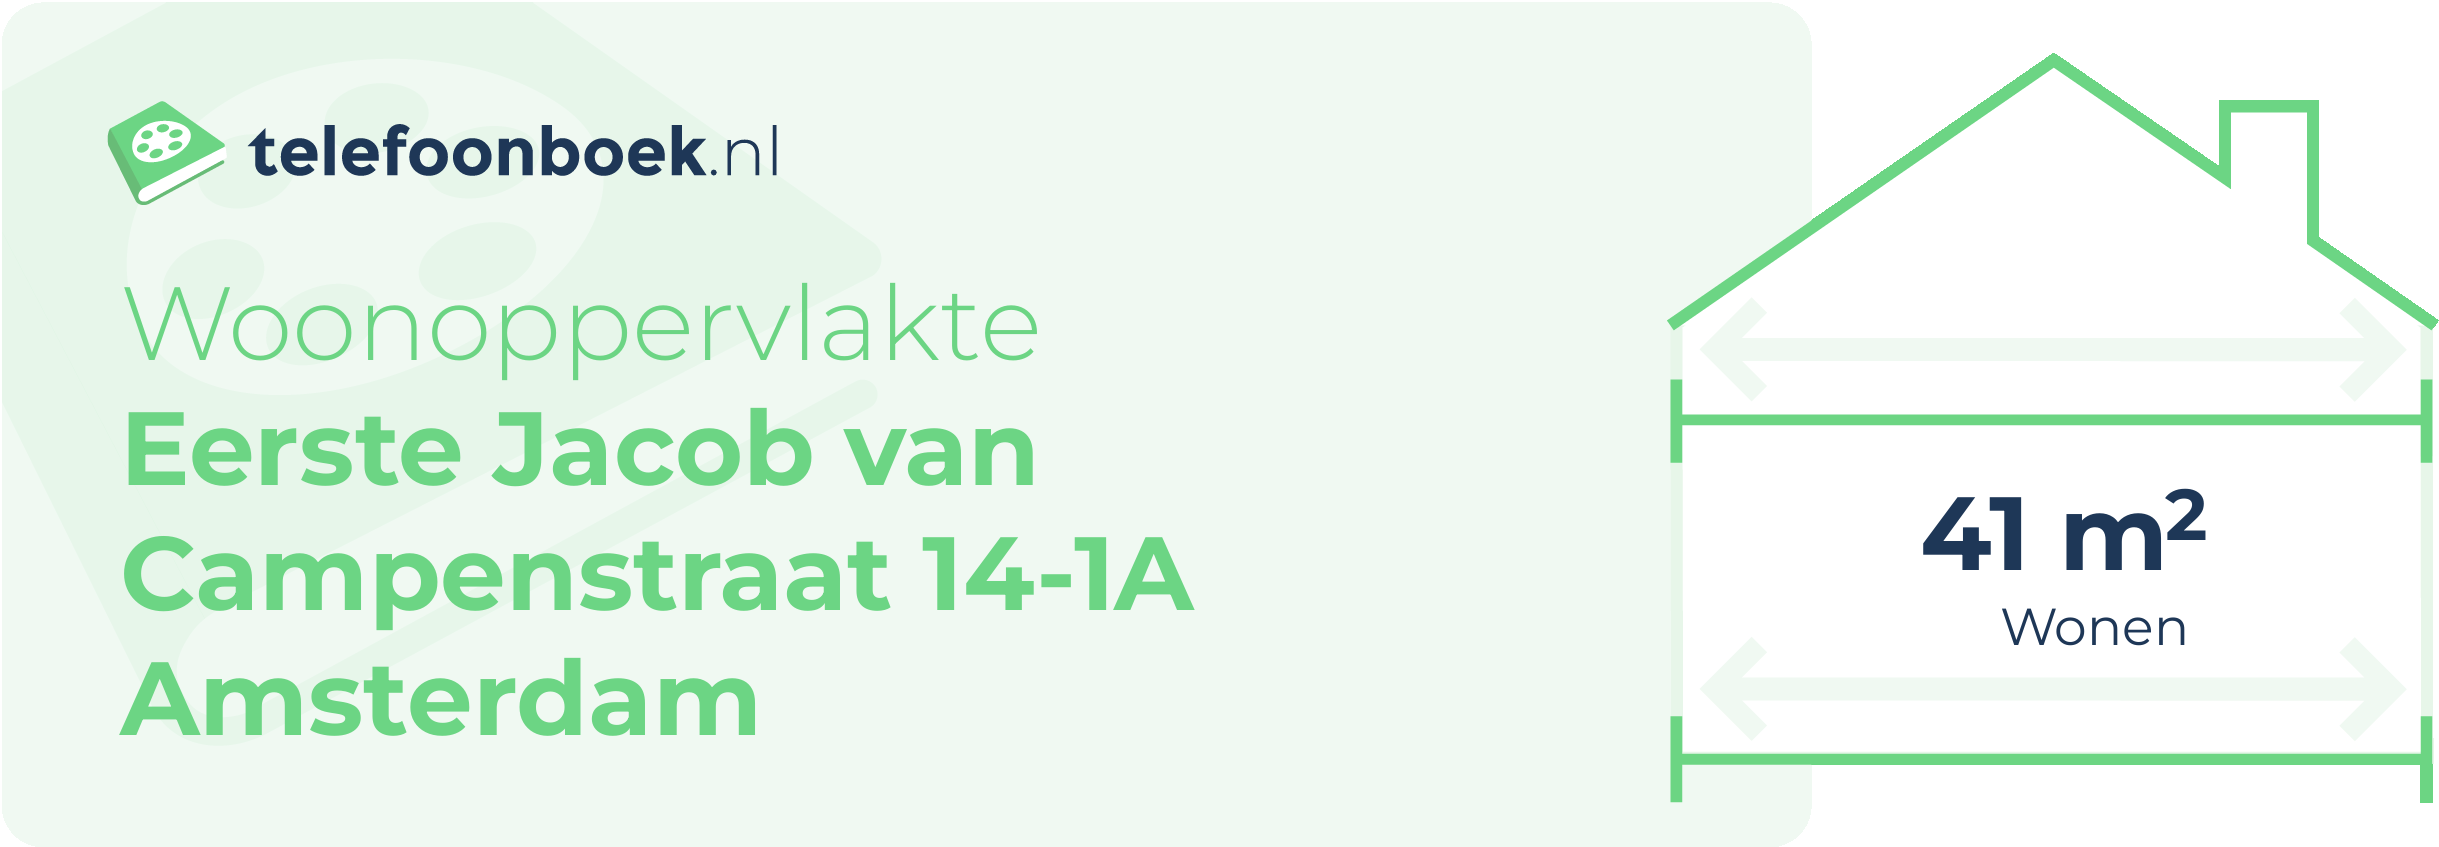 Woonoppervlakte Eerste Jacob Van Campenstraat 14-1A Amsterdam